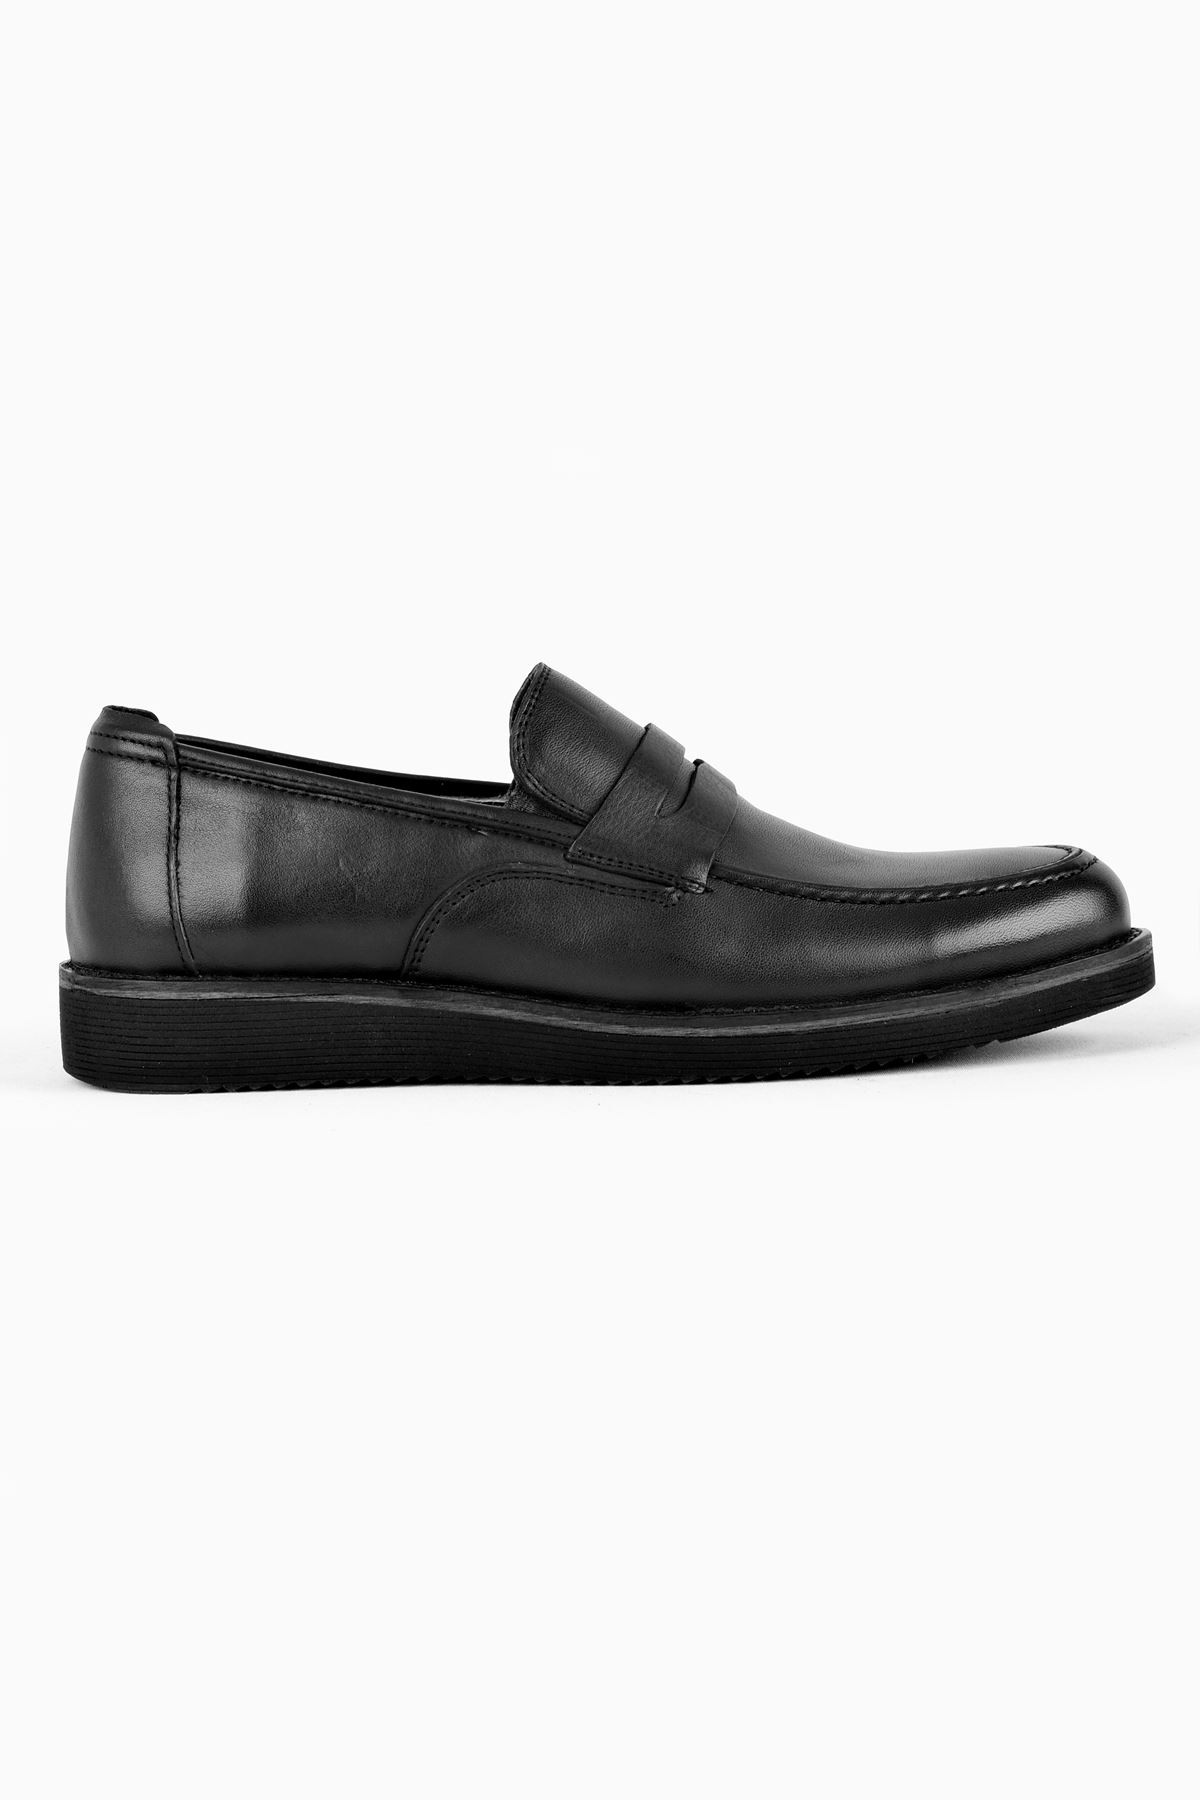 James Erkek Hakiki Deri Ayakkabı Klasik - Siyah